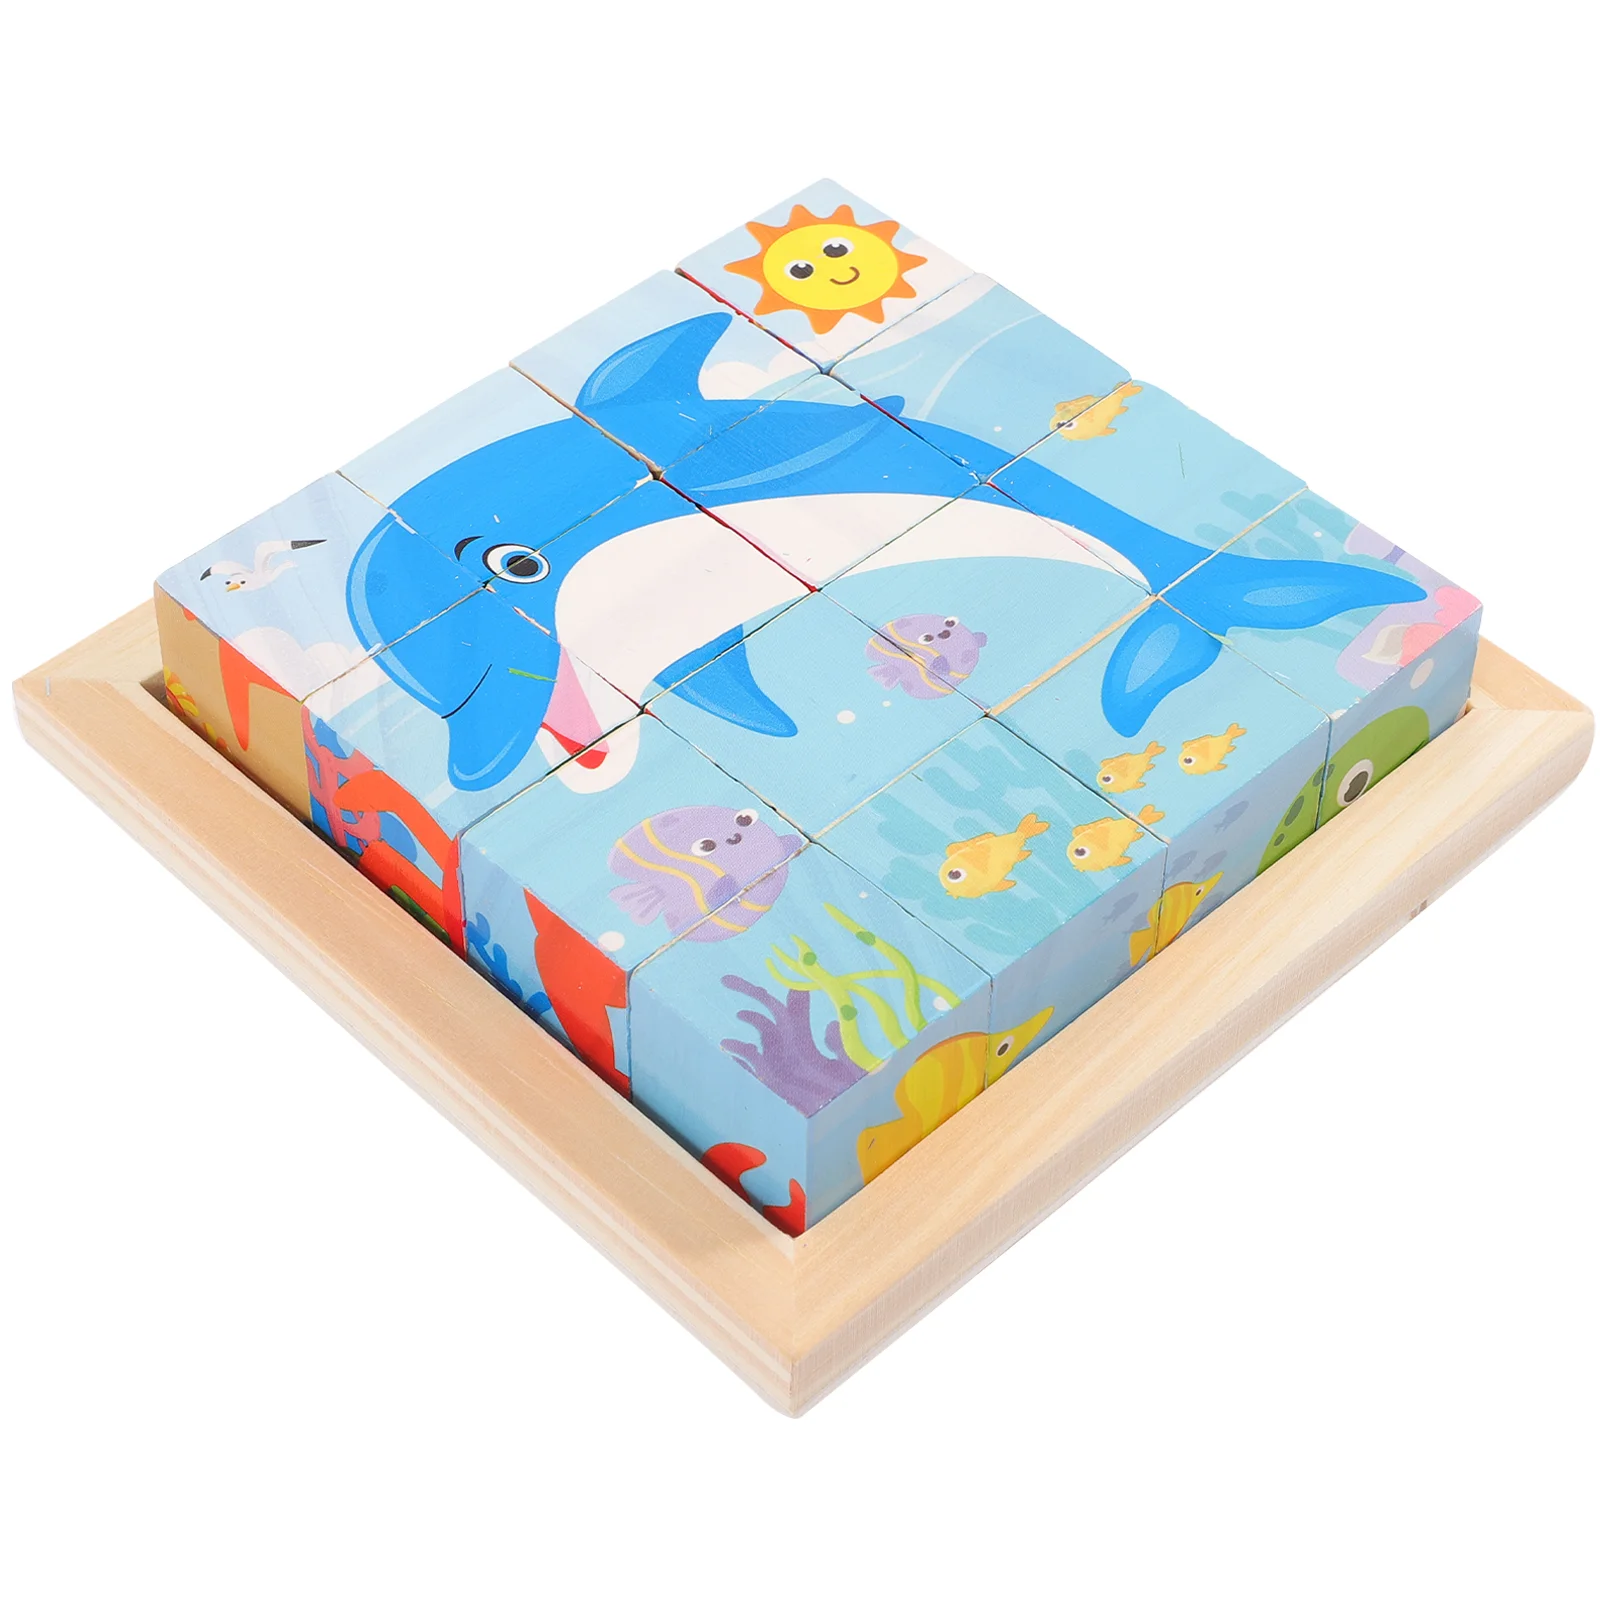 

Пазлы деревянные с животными и дельфинами, пазлы-конструкторы деревянные, развивающие 3D-игры на день рождения, подарки для детей